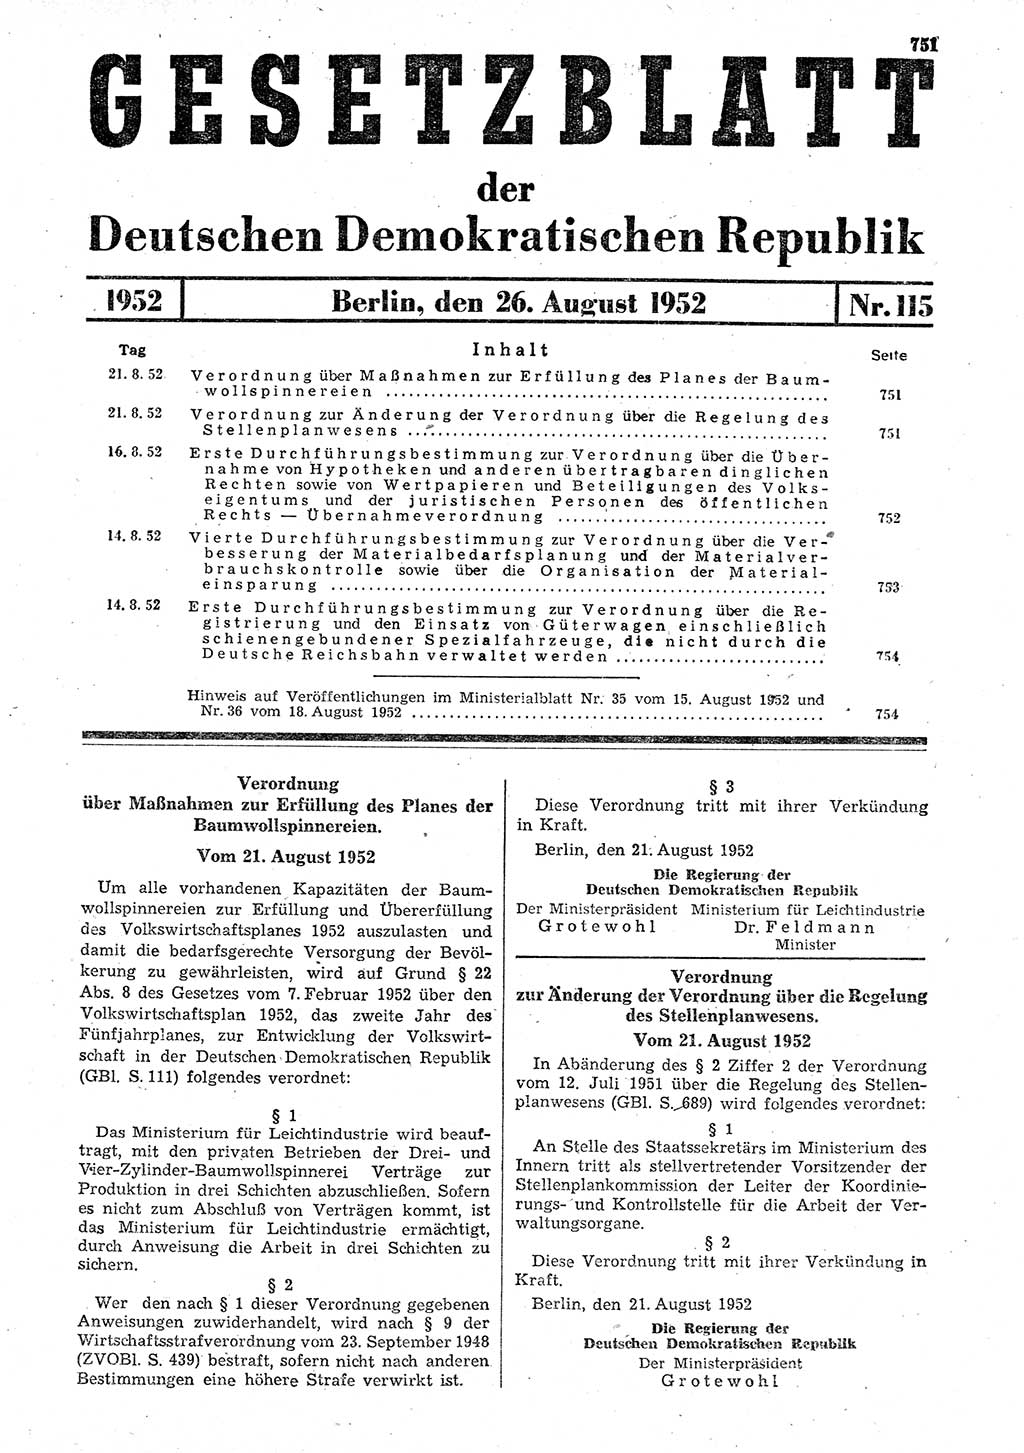 Gesetzblatt (GBl.) der Deutschen Demokratischen Republik (DDR) 1952, Seite 751 (GBl. DDR 1952, S. 751)